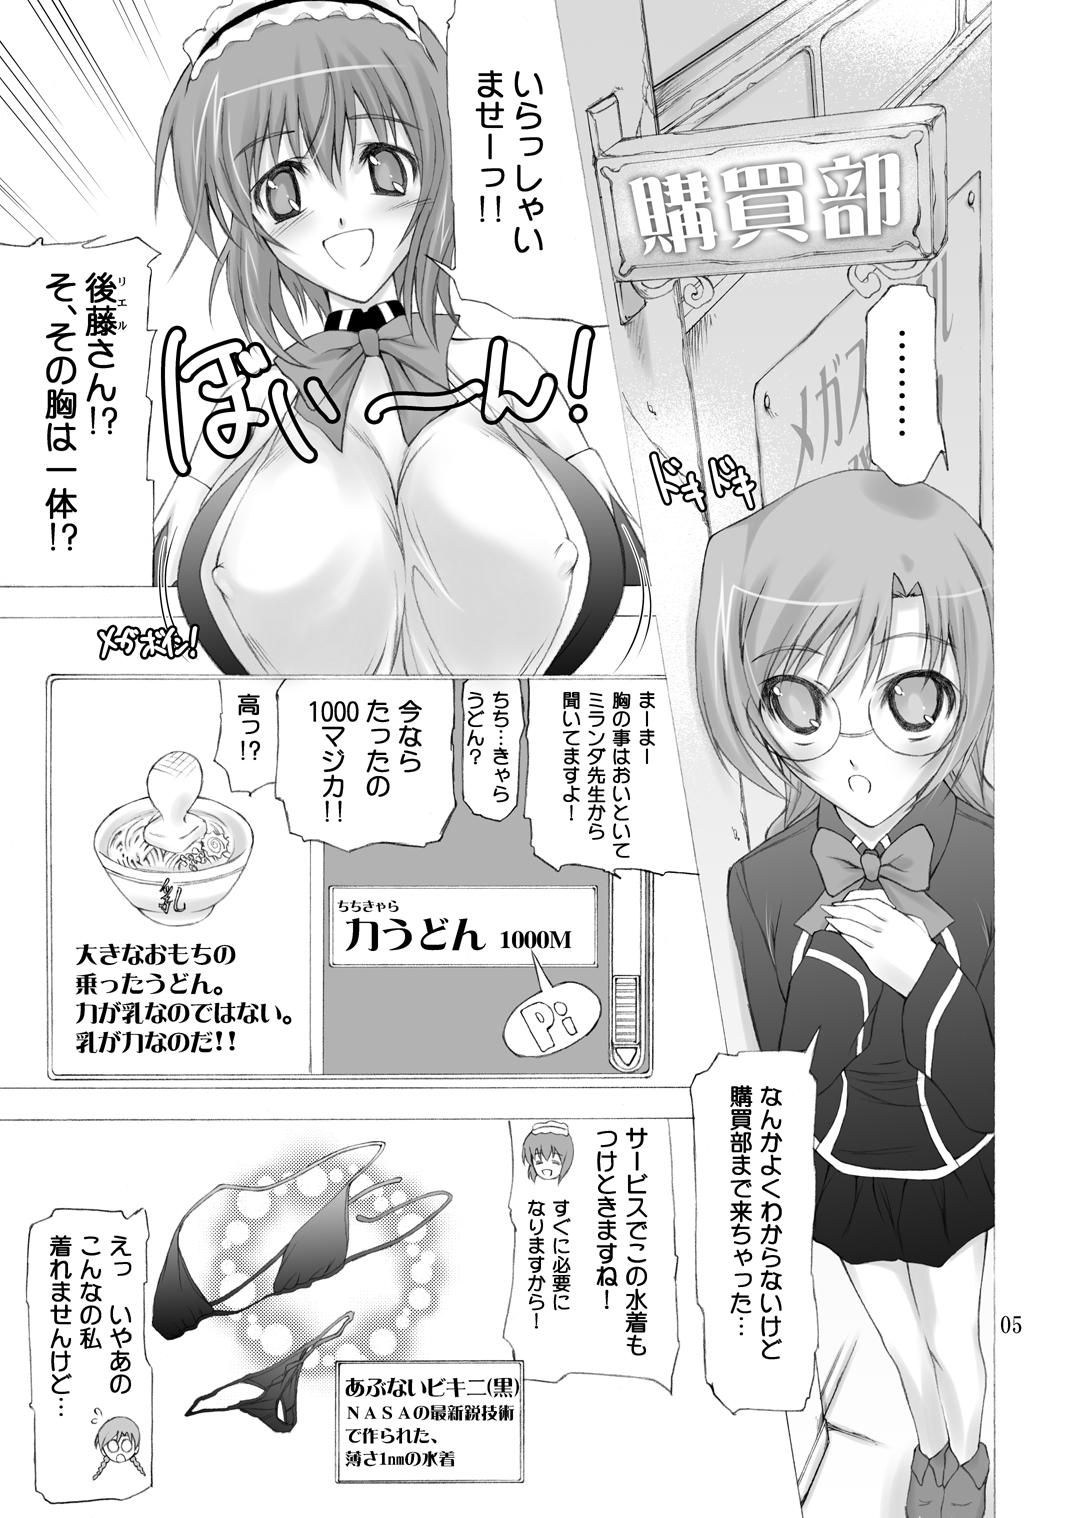 Gangbang Quiz Chikara Udon Hajimemashita! - Quiz magic academy 4some - Page 4